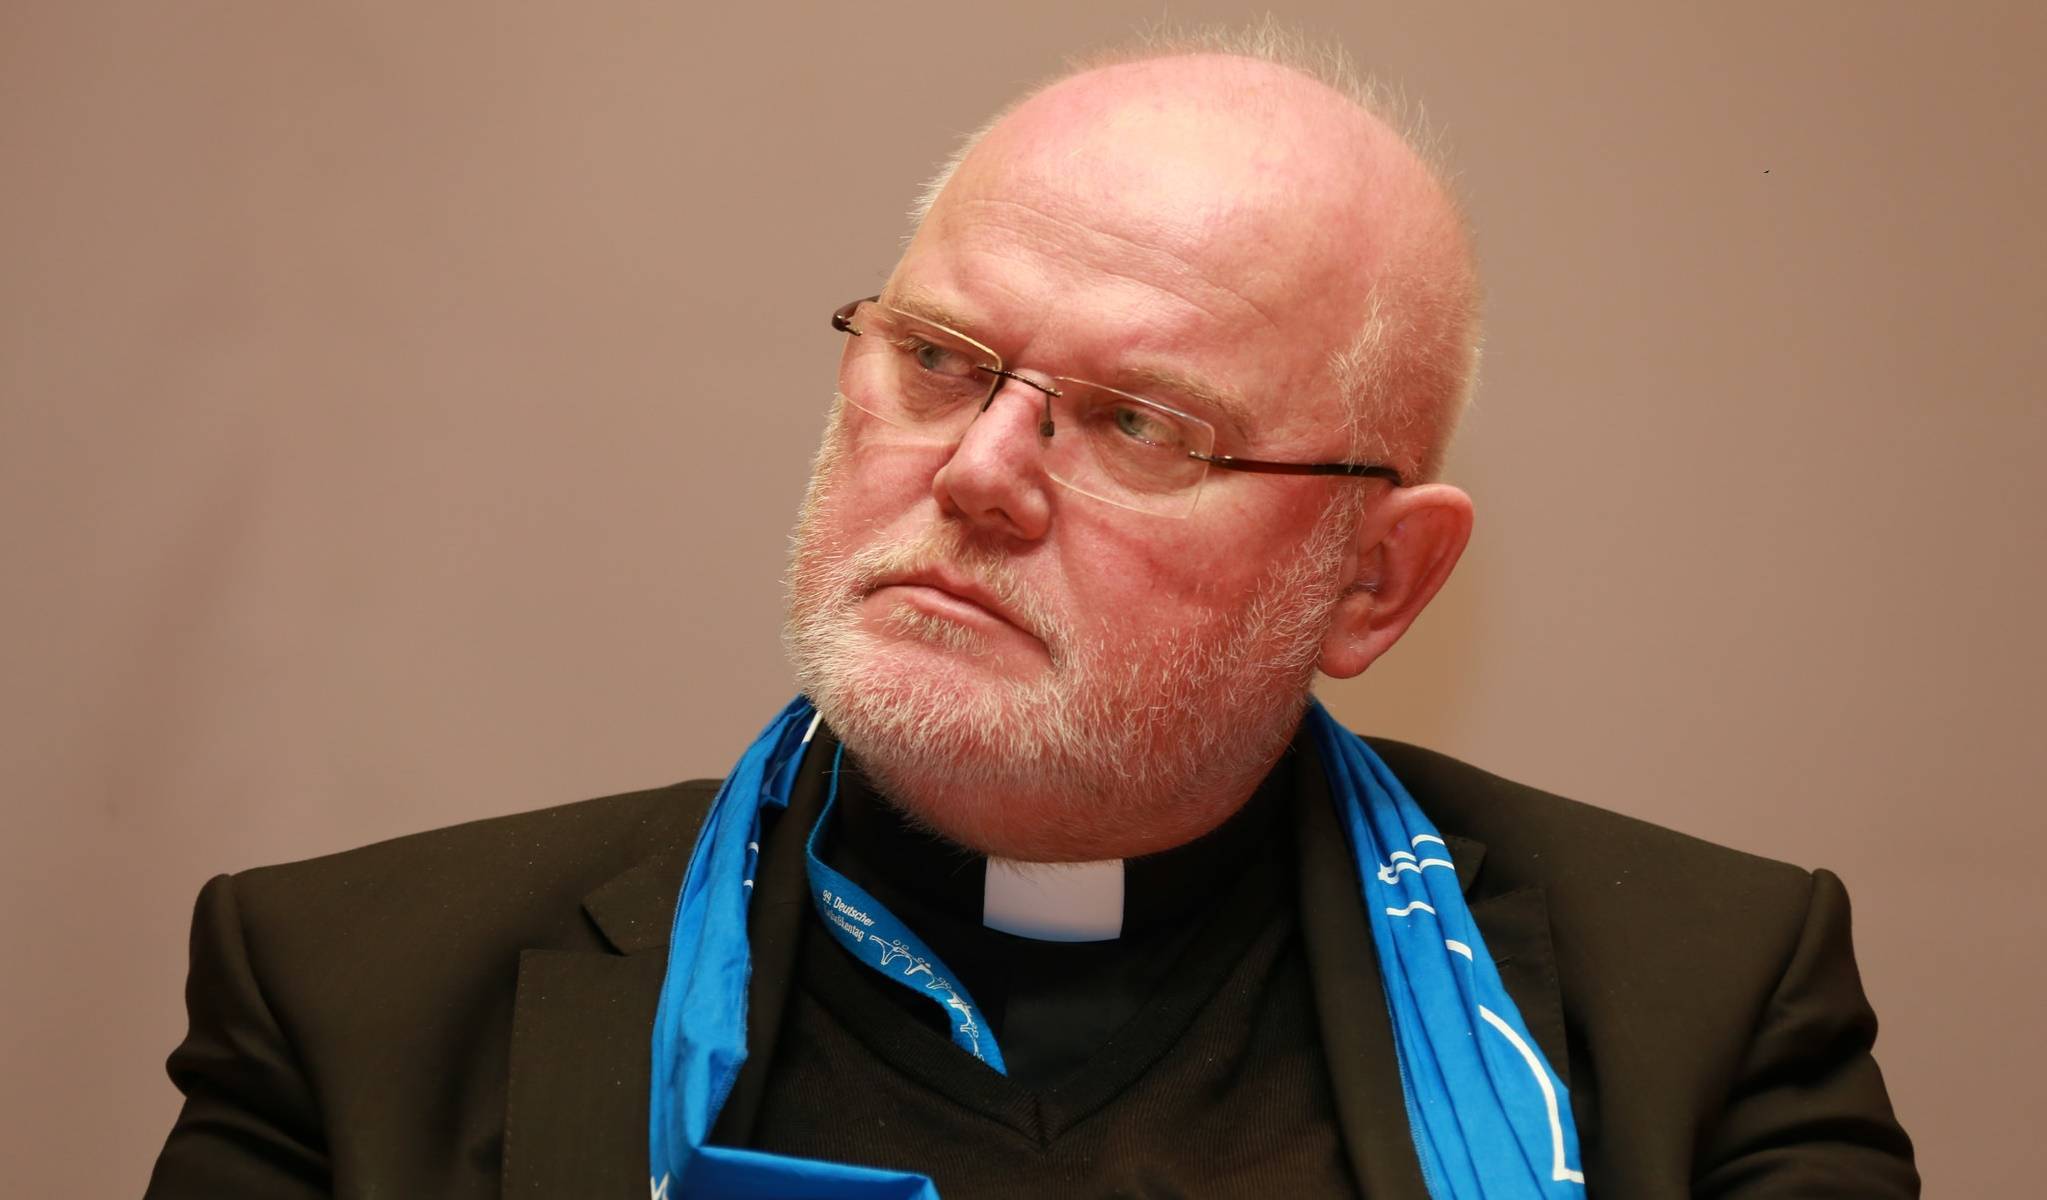 Obispos alemanes analizarán con la Curia si dar la comunión a no católicos